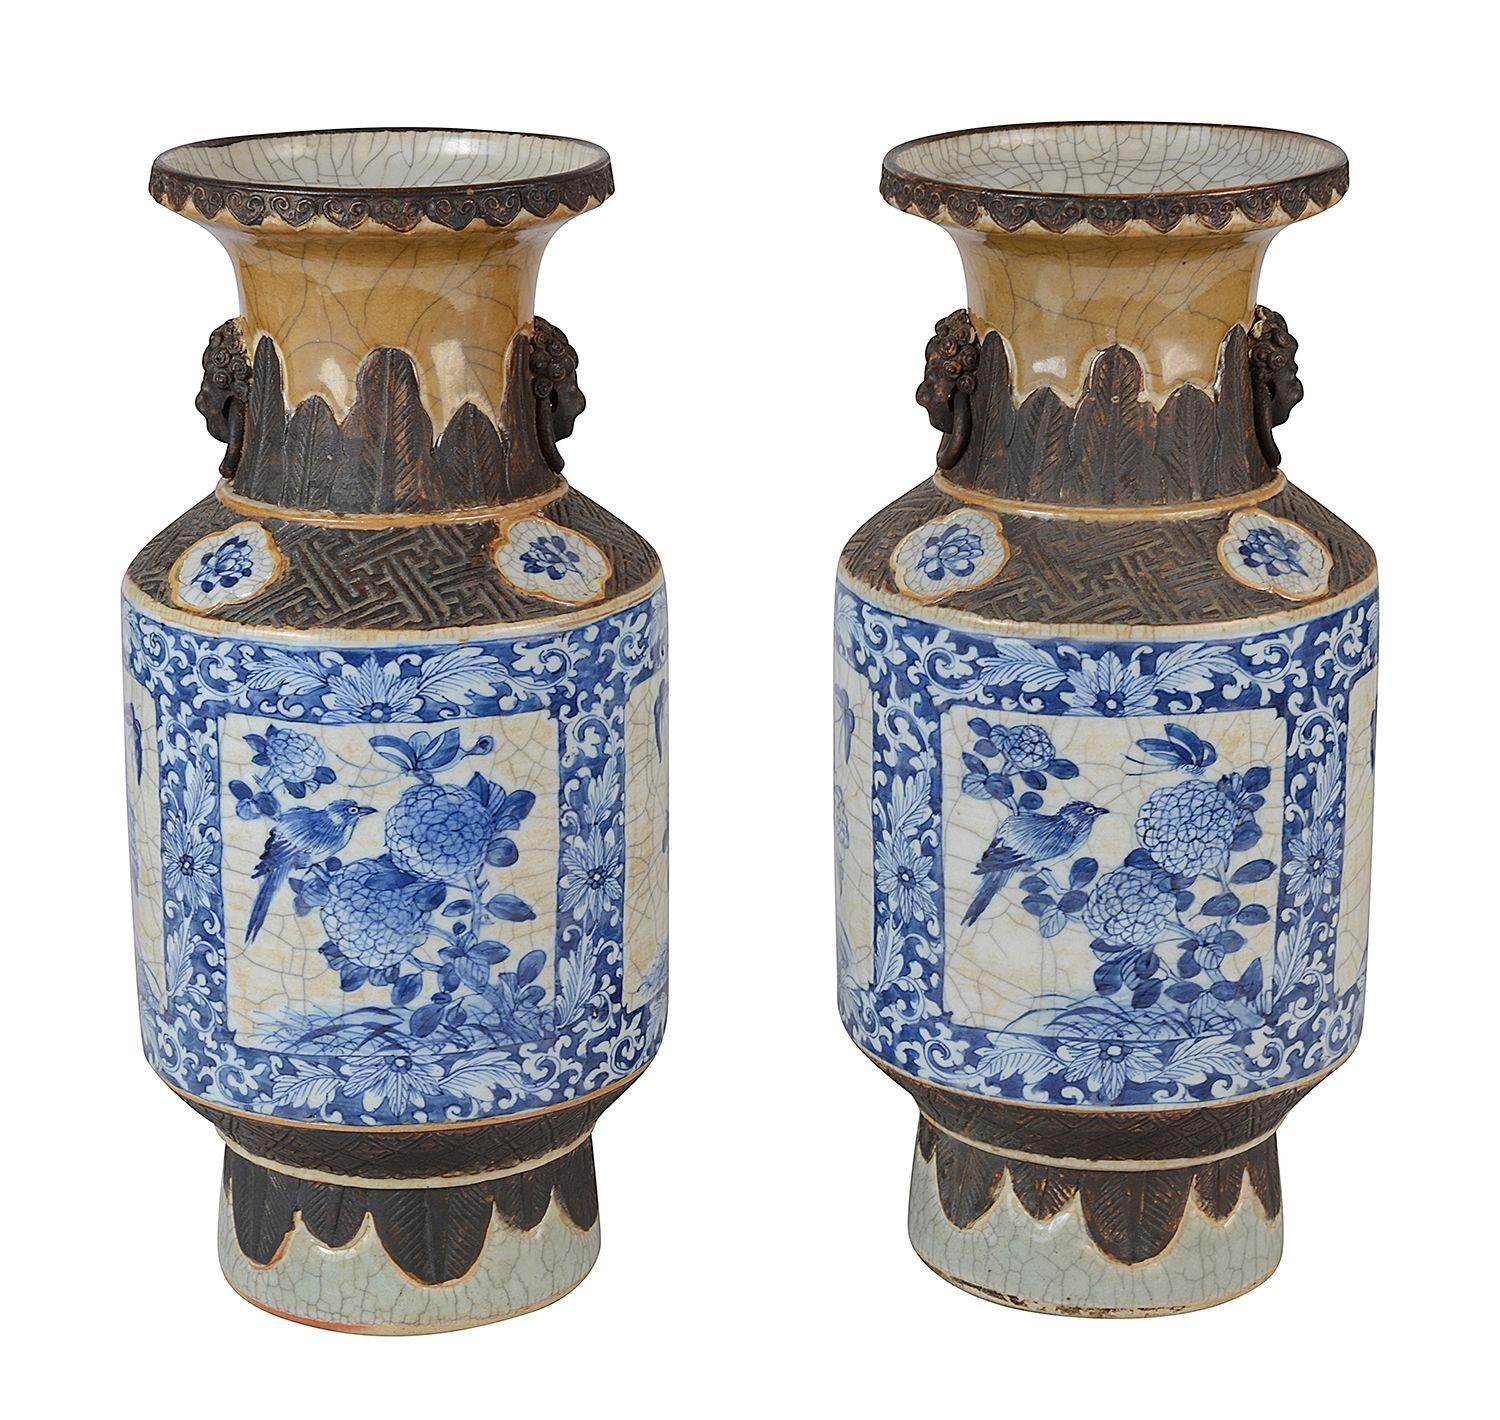 Eine gute Qualität Paar des späten 19. Jahrhunderts chinesischen Export Blau und Weiß Craqueléwaren Vasen / Lampen.
Jede mit faux bronze mountings über und unter dem zentralen blau und weiß handgemalten Szenen von Vögeln auf den Zweigen der